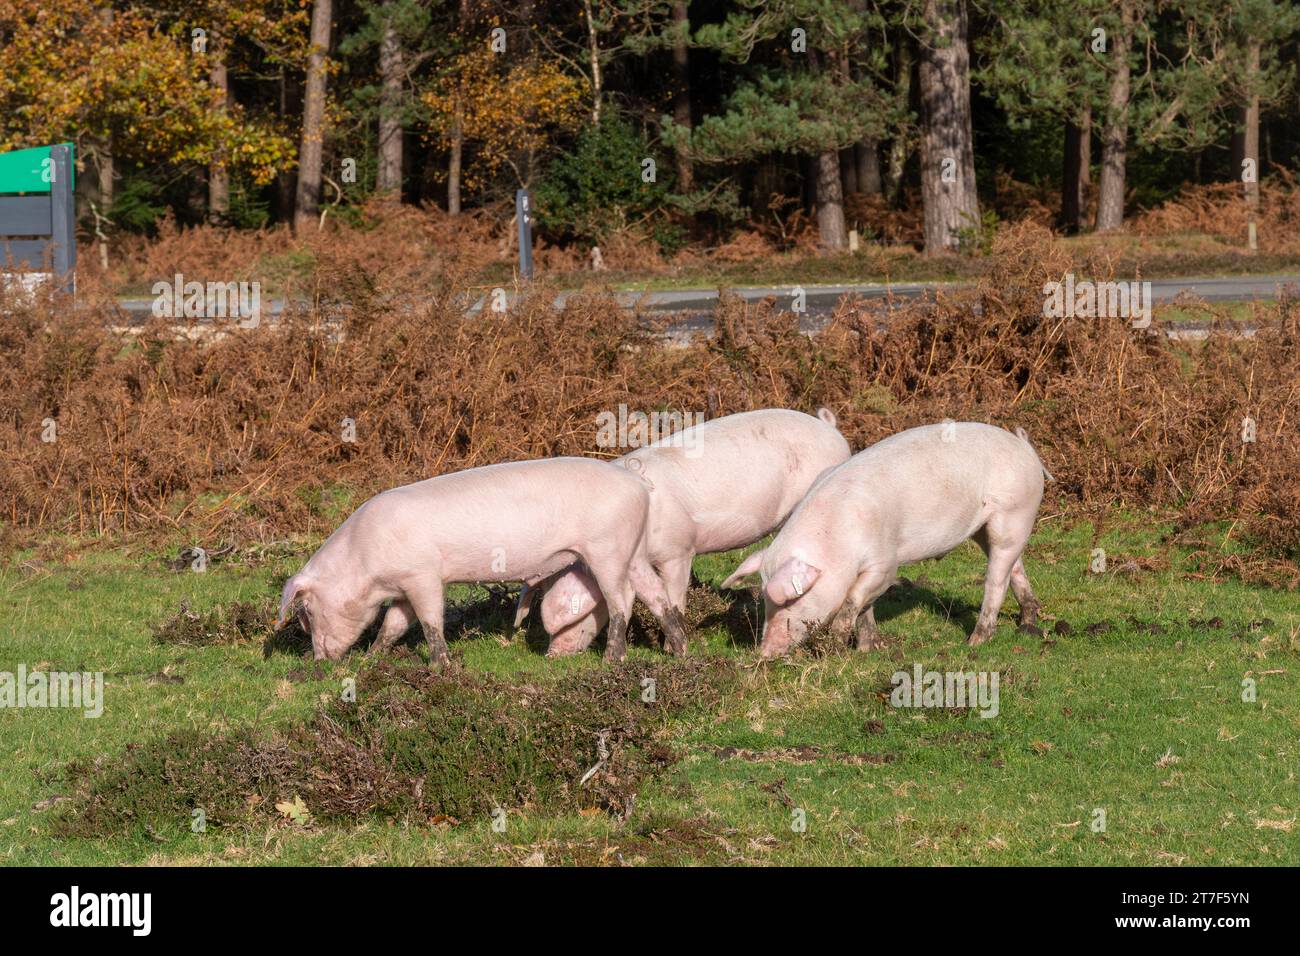 Los cerdos domésticos deambulan por el Nuevo Bosque durante el otoño en temporada de pannage para comer bellotas y nueces (las bellotas son venenosas para los ponis), noviembre, Inglaterra, Reino Unido Foto de stock